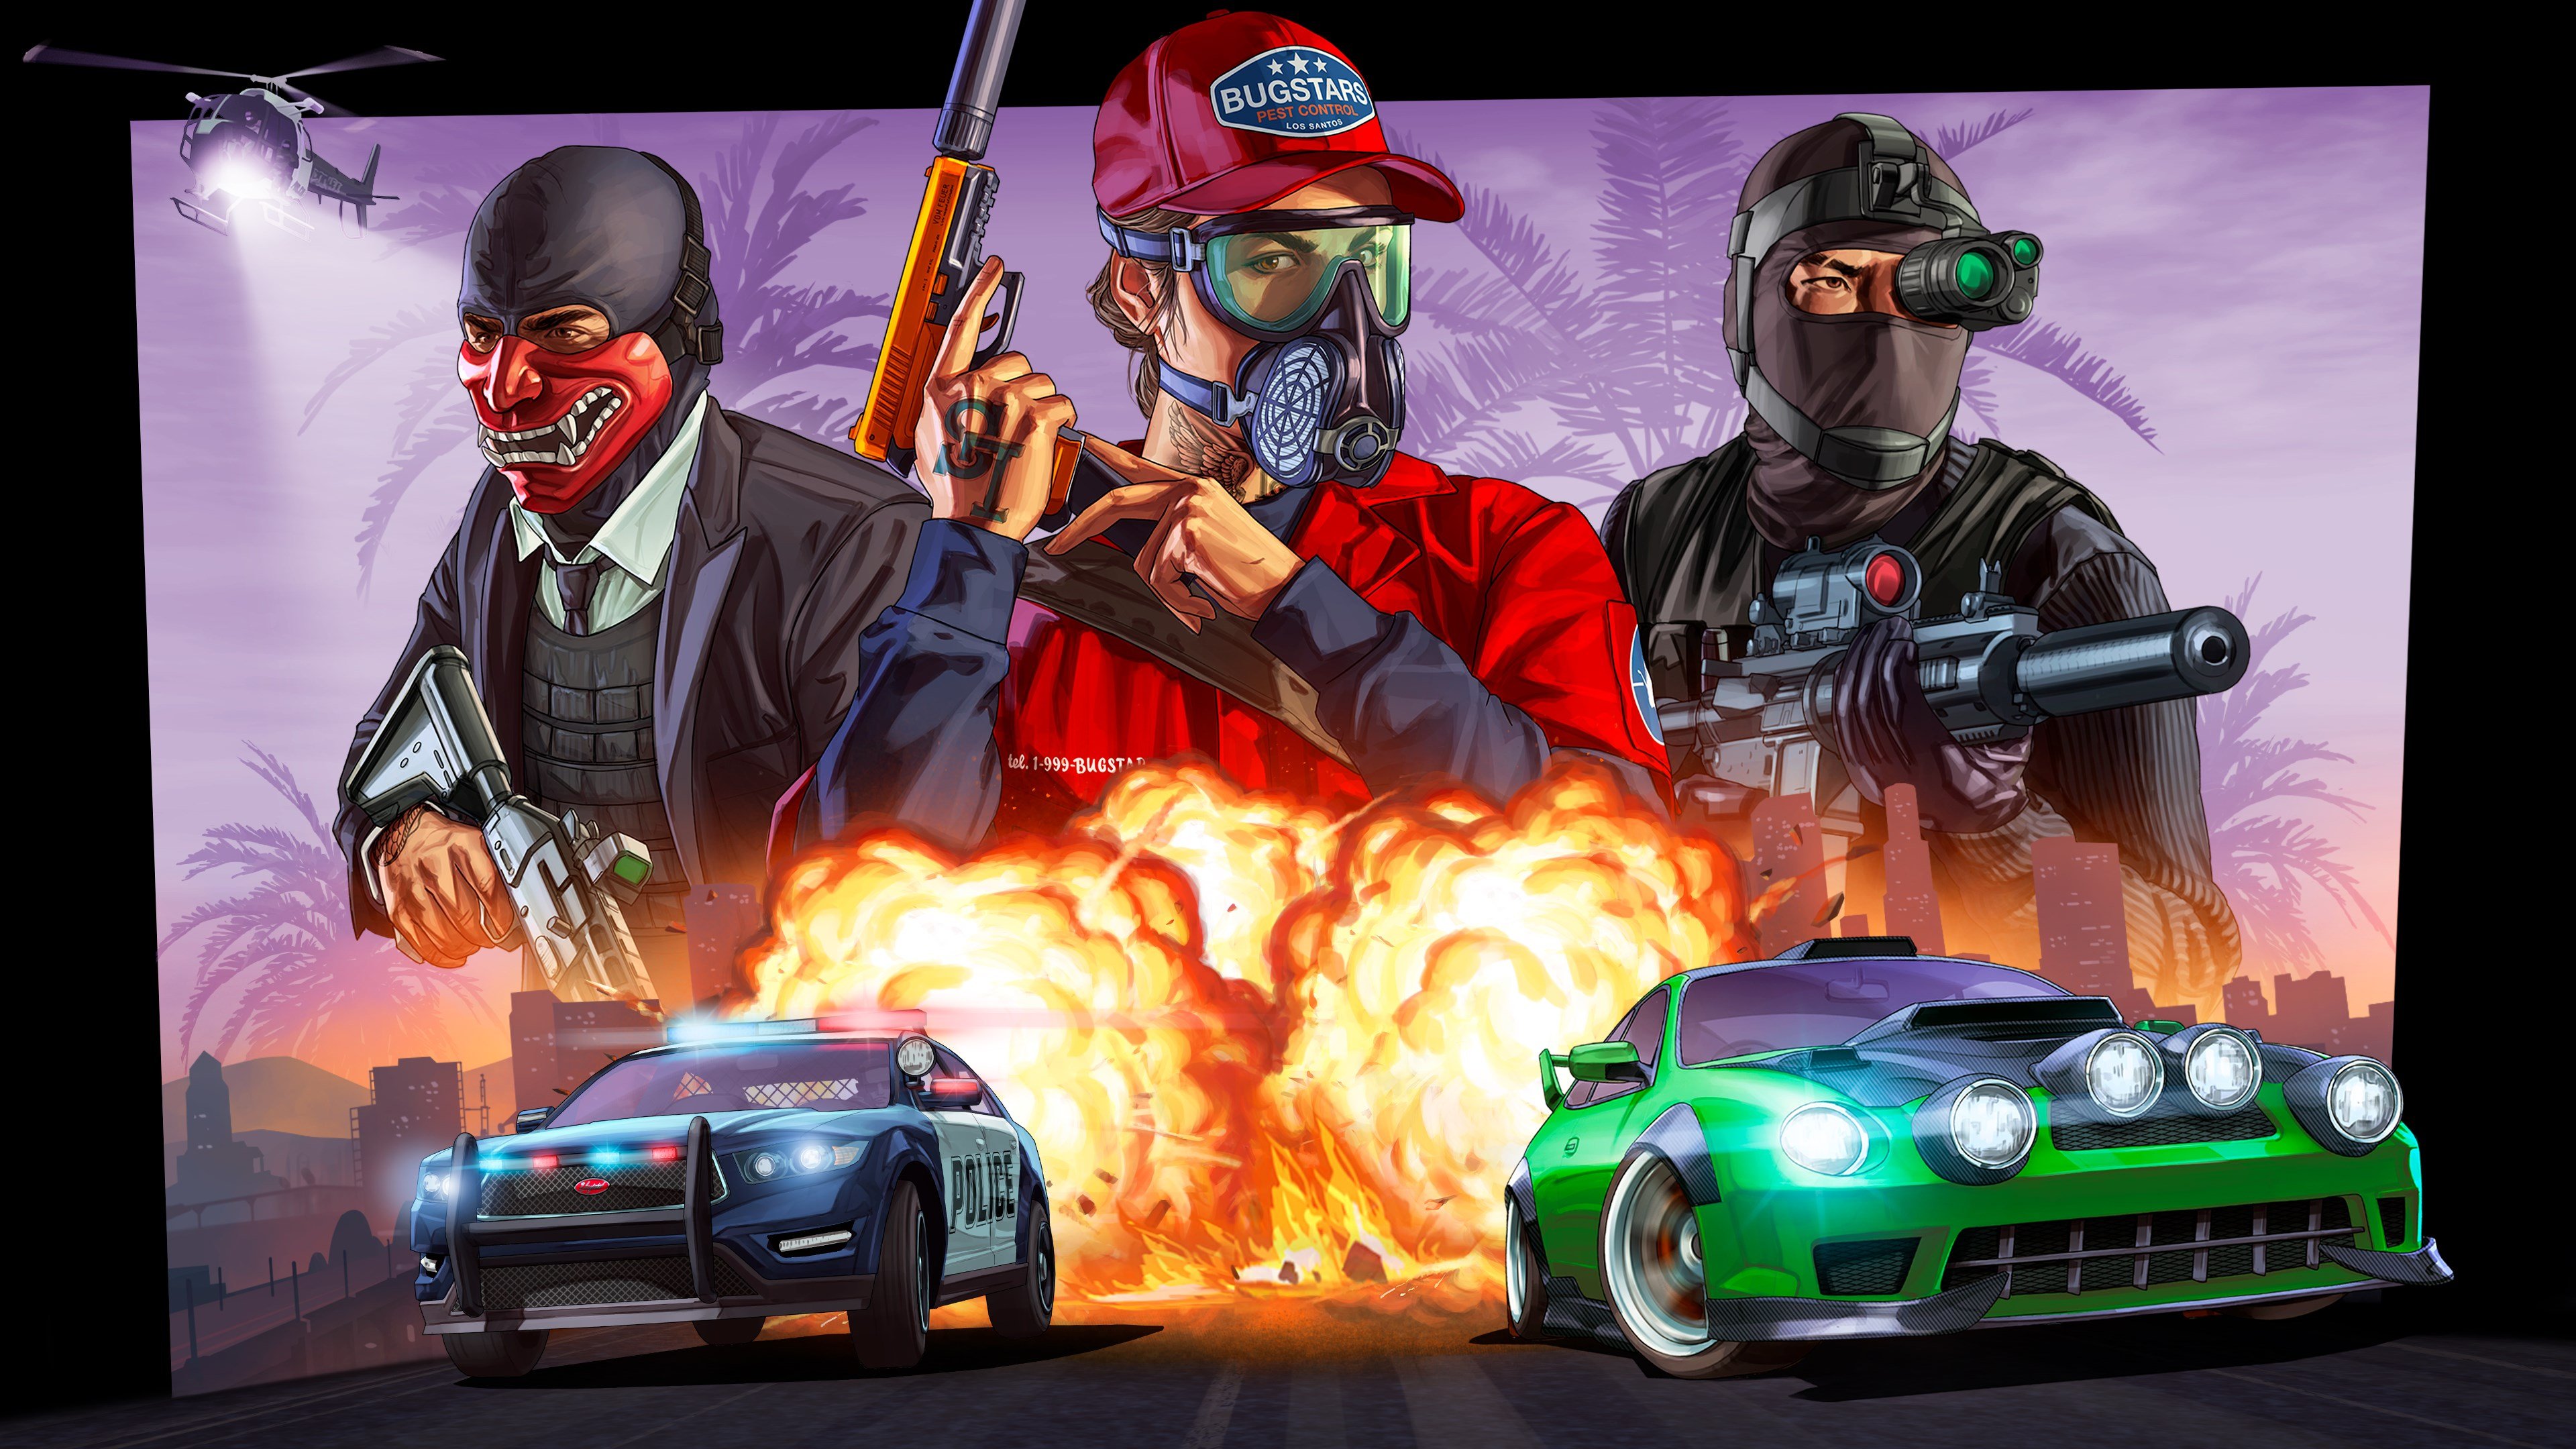 Grand Theft Auto V cover image